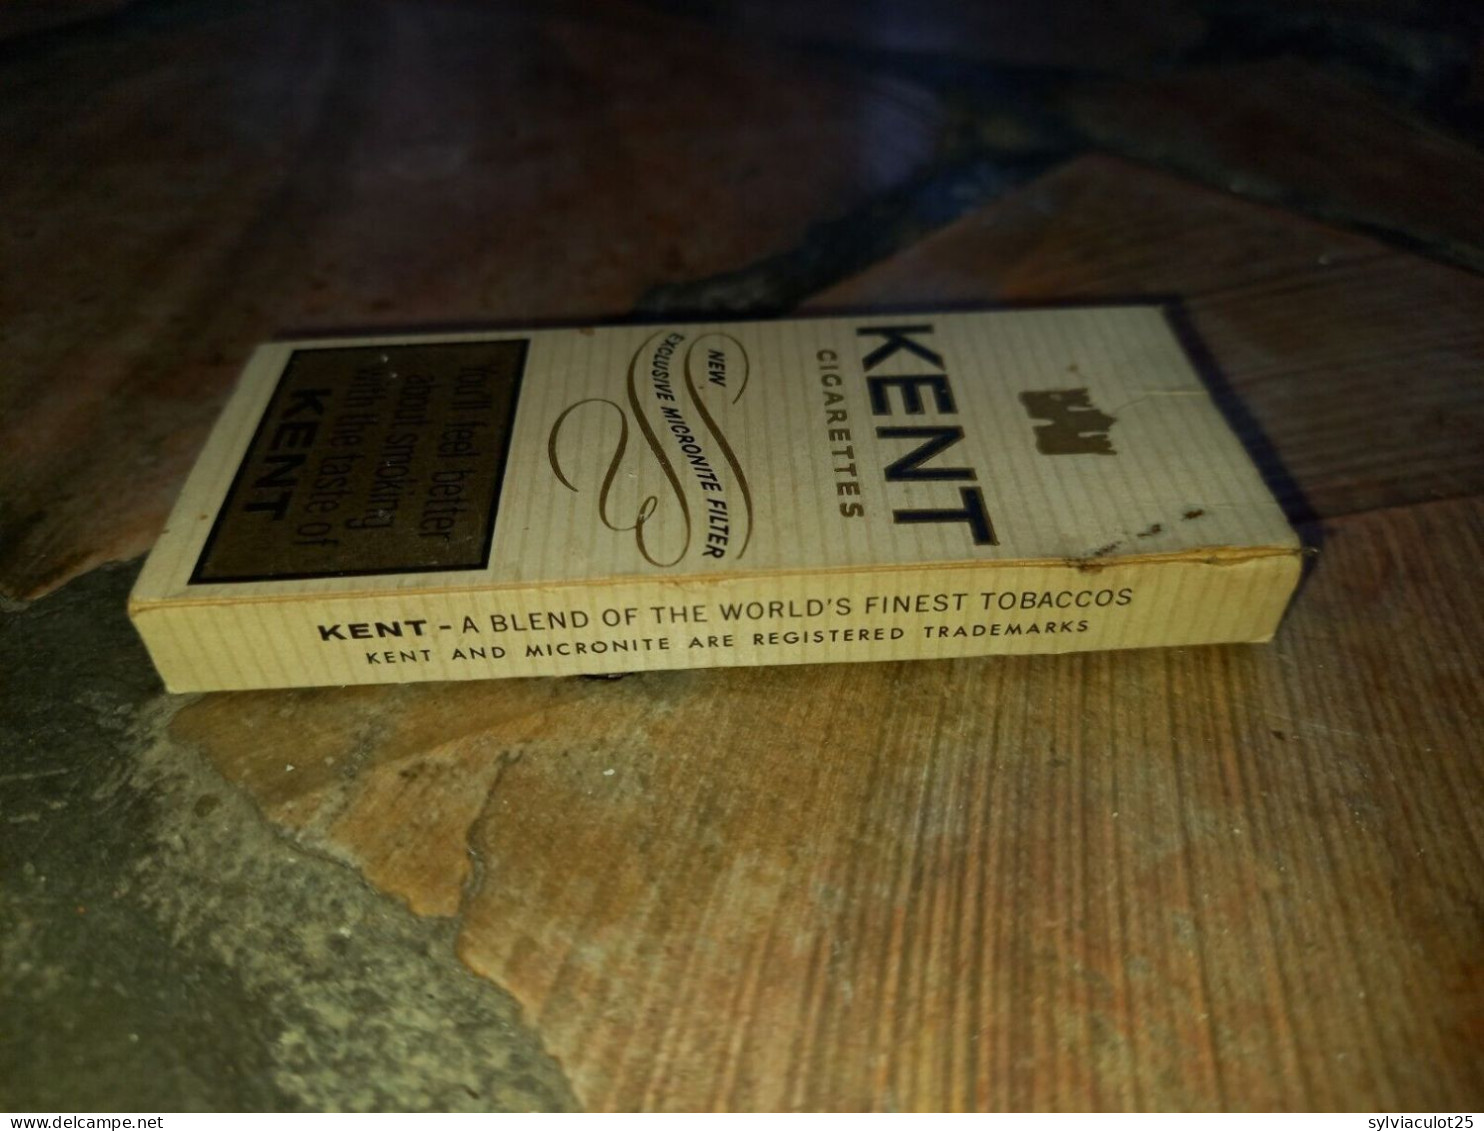 USA Kent Paquet De 4 Cigarettes Vide - Publicité Fly TWA For The Finest In Air Travel - Autres & Non Classés